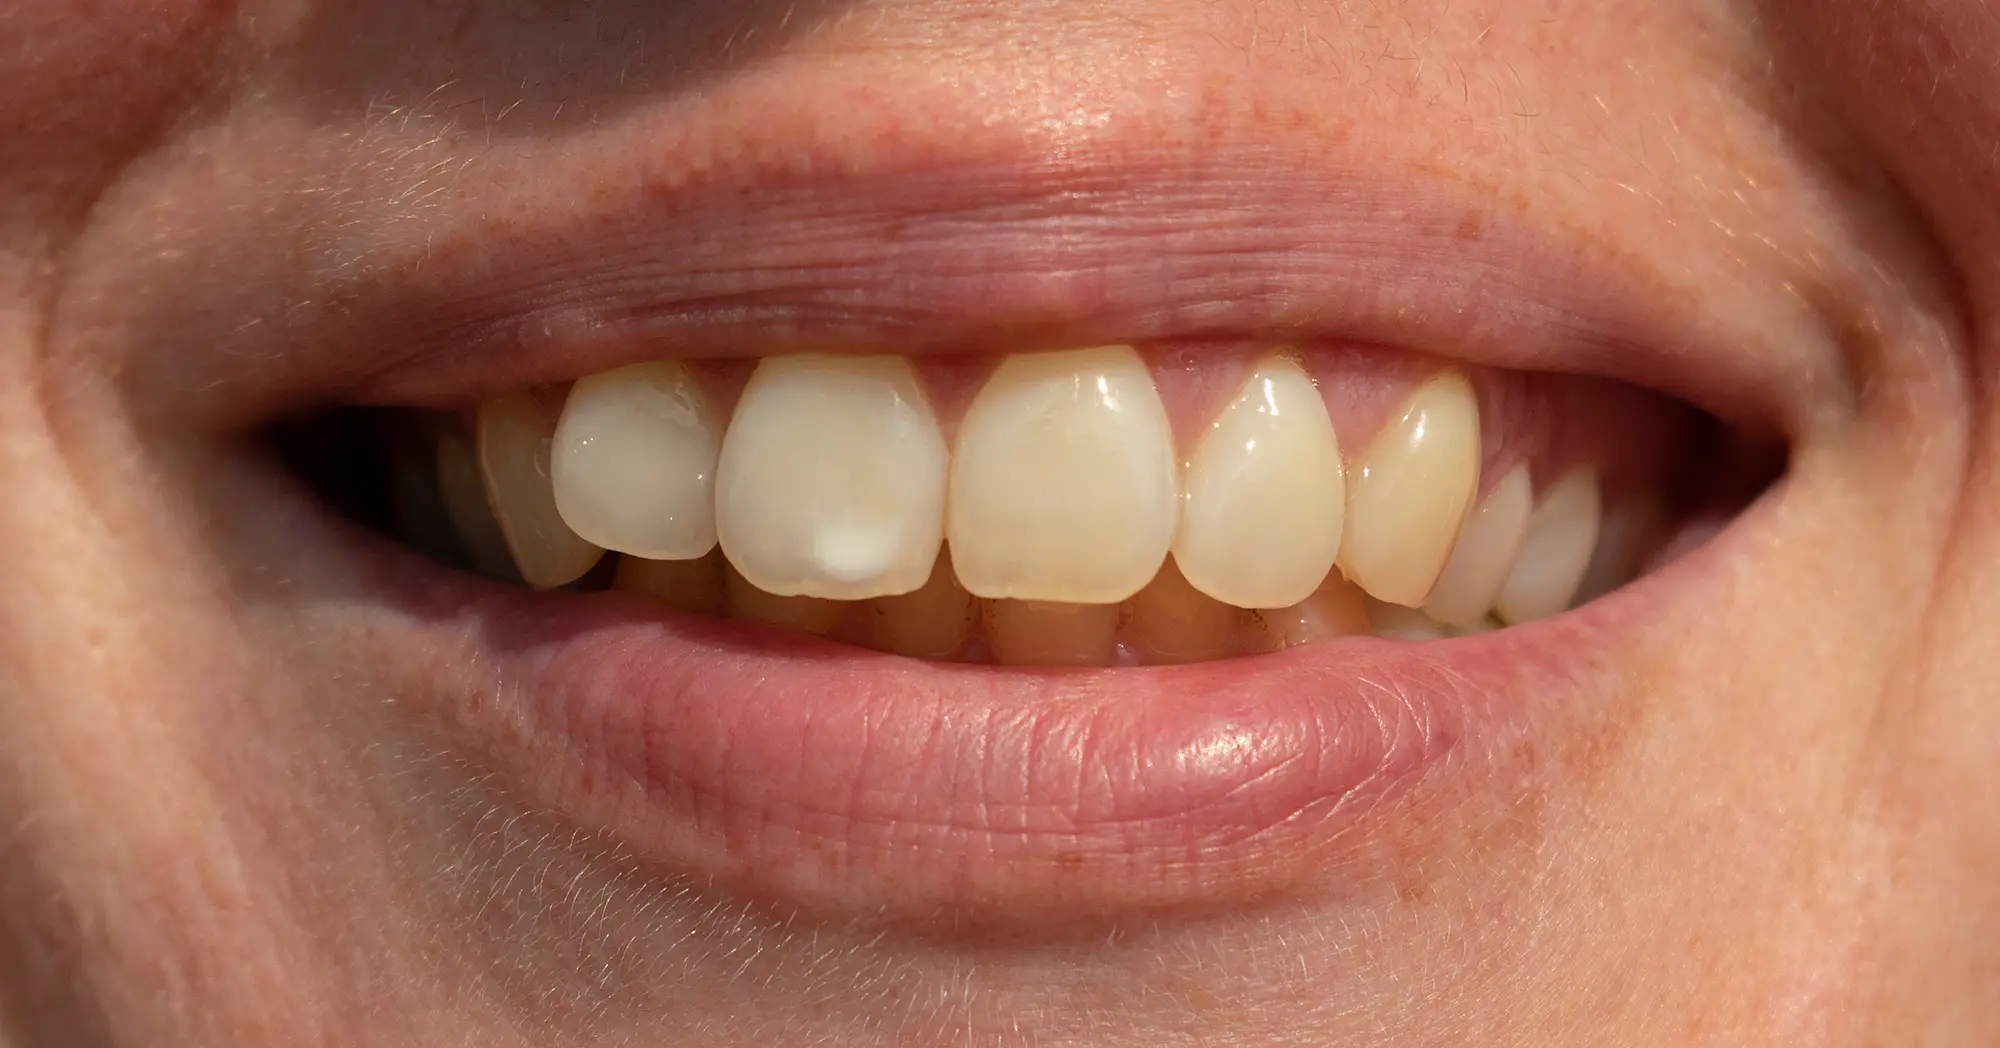 Macchie bianche sui denti: cosa sono e come risolvere?